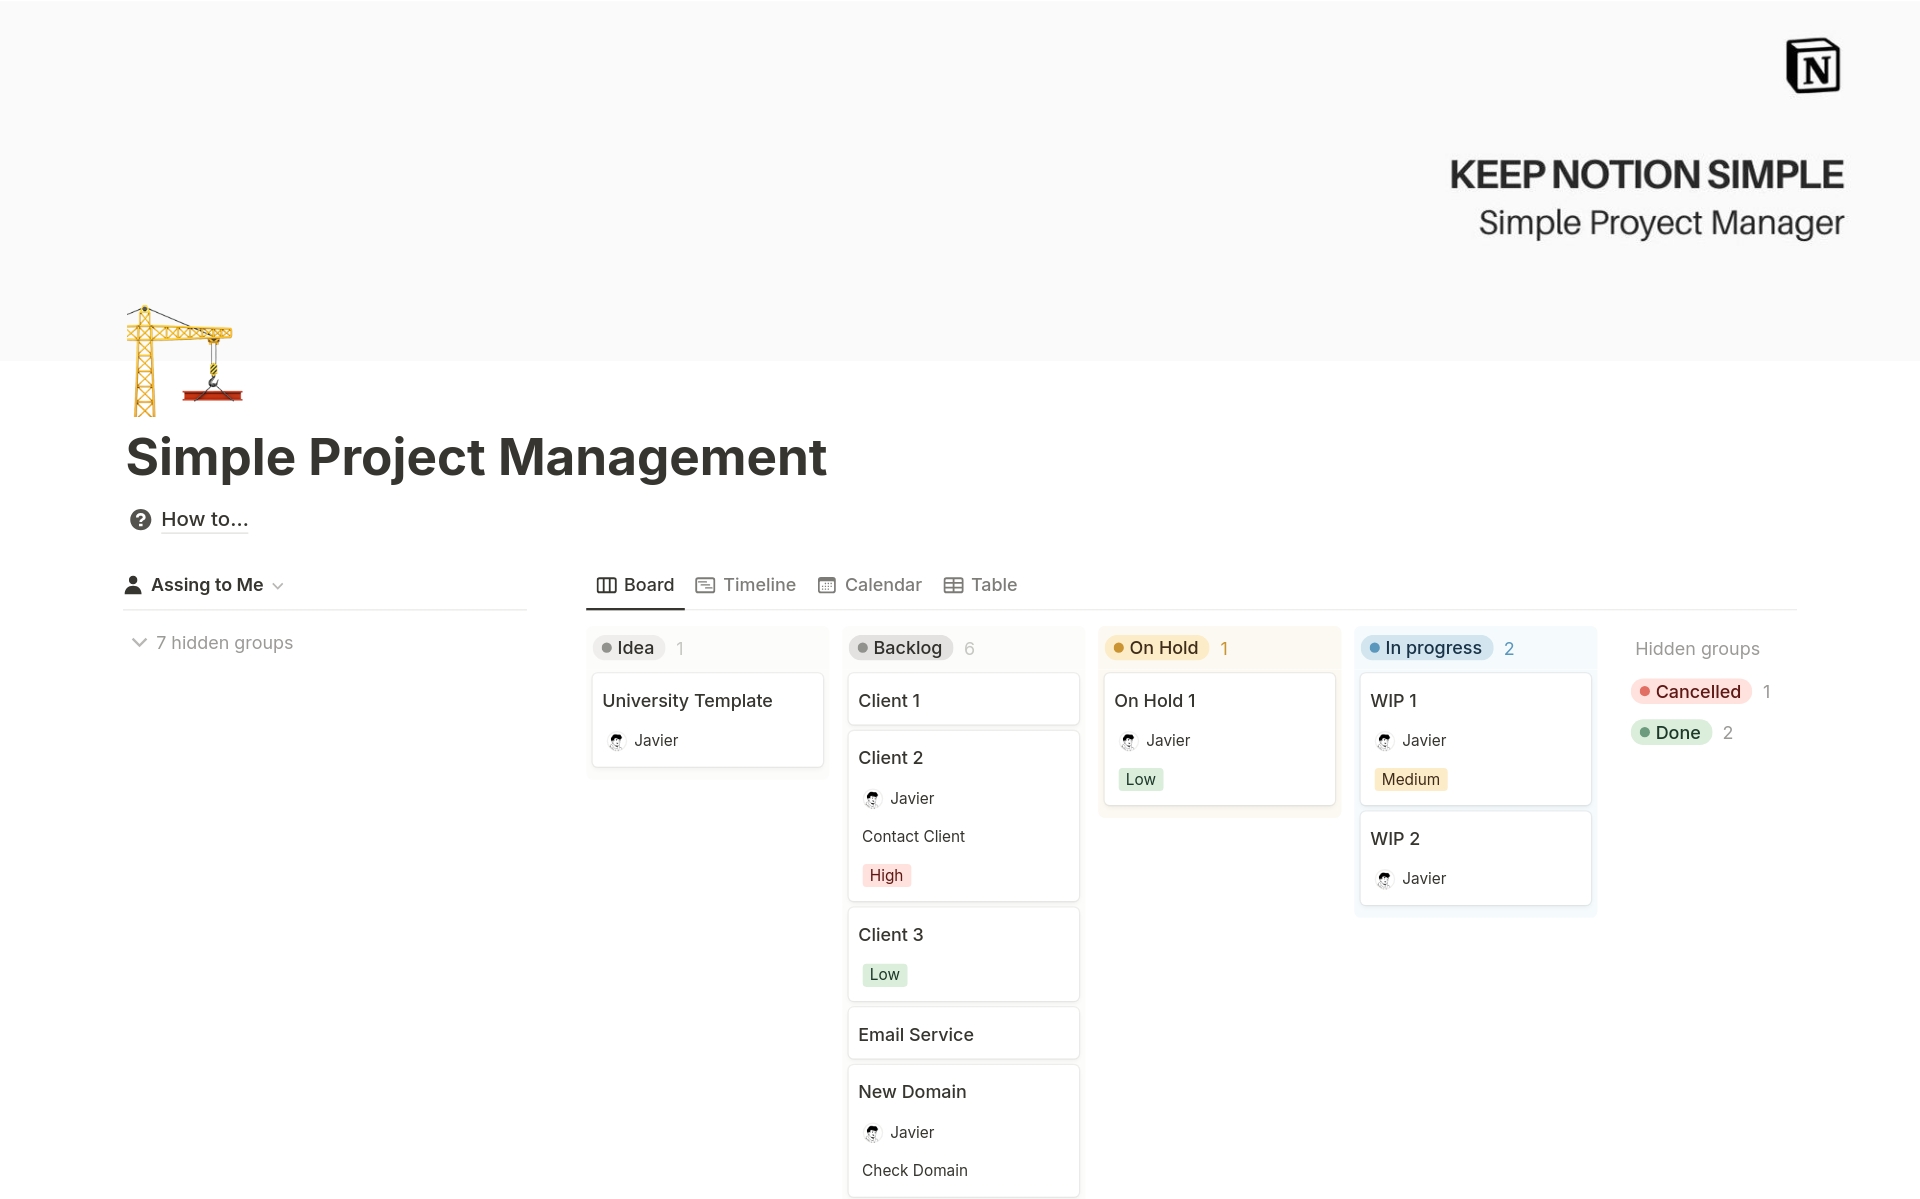 Vista previa de una plantilla para KNS Simple Project Management